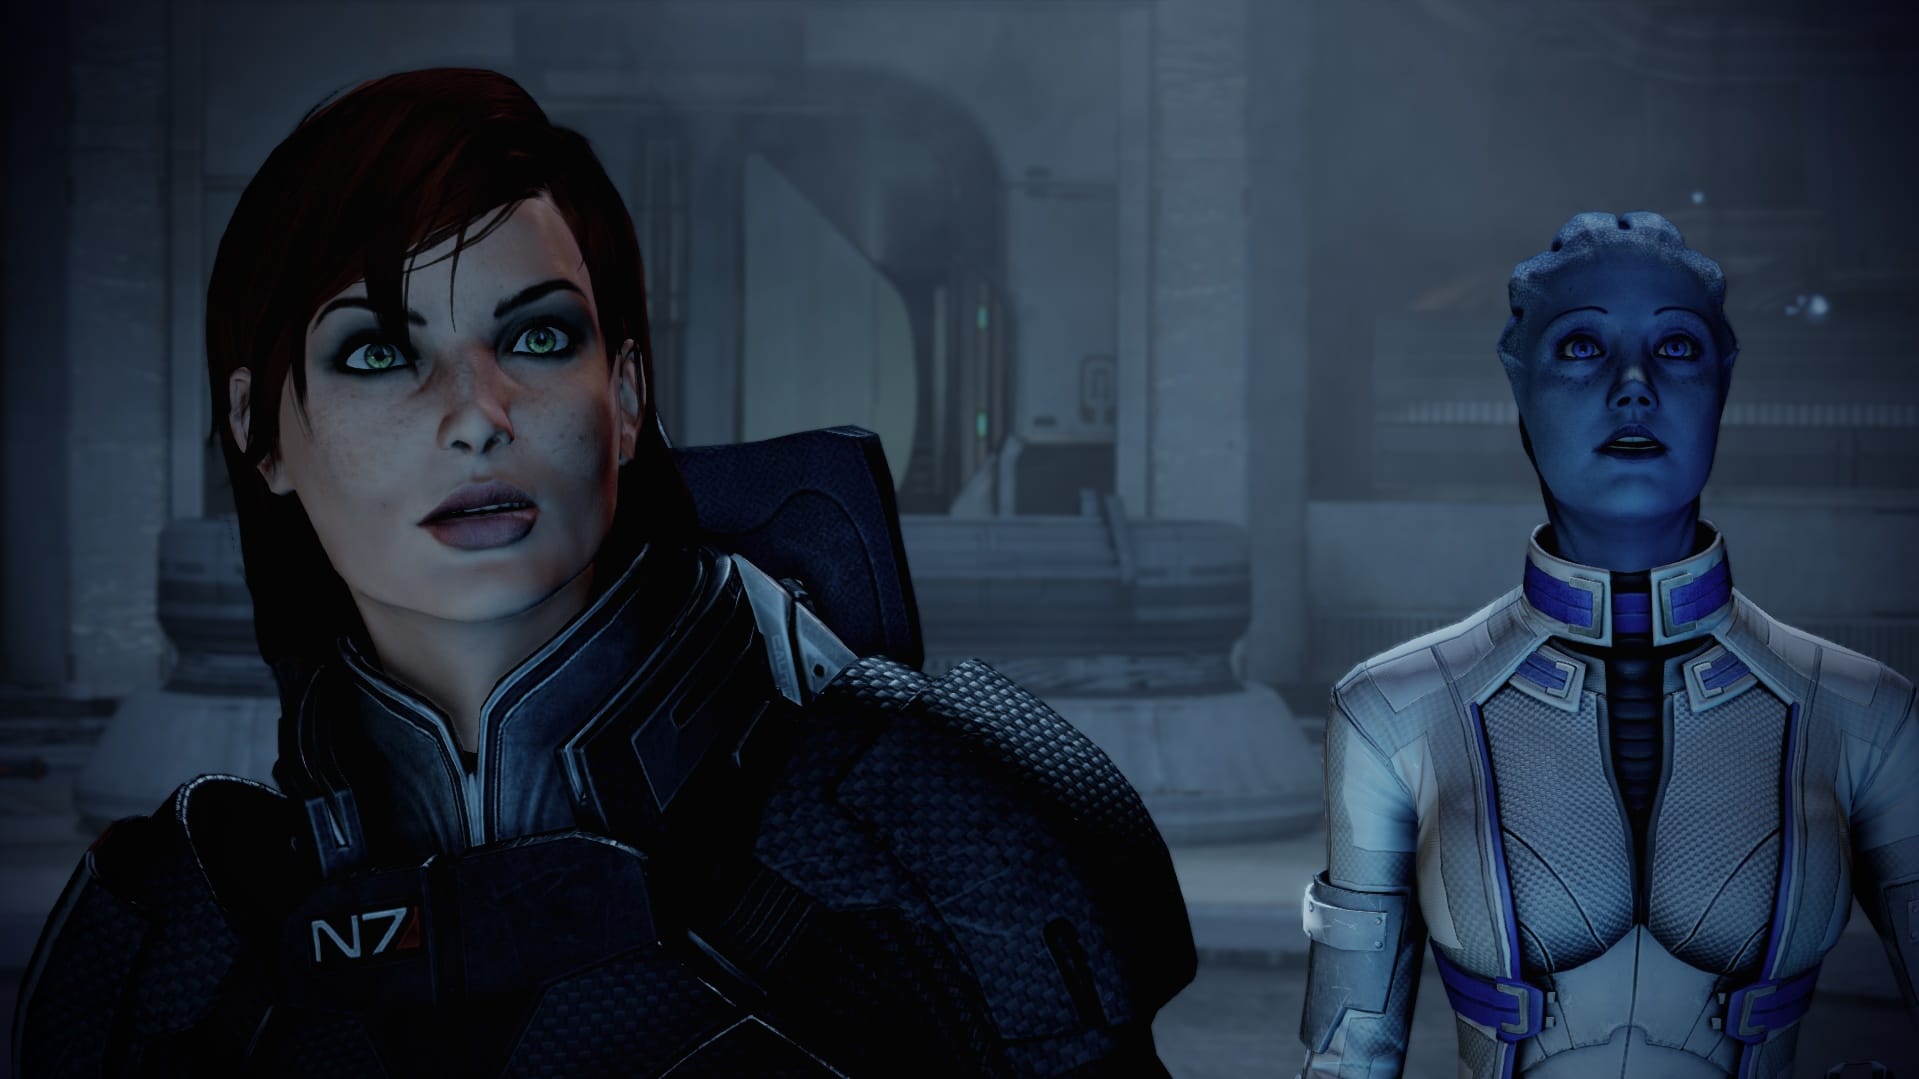 Výrazy obličeje, které mluví za vše. Mass Effect 2 vždycky dokáže překvapit.